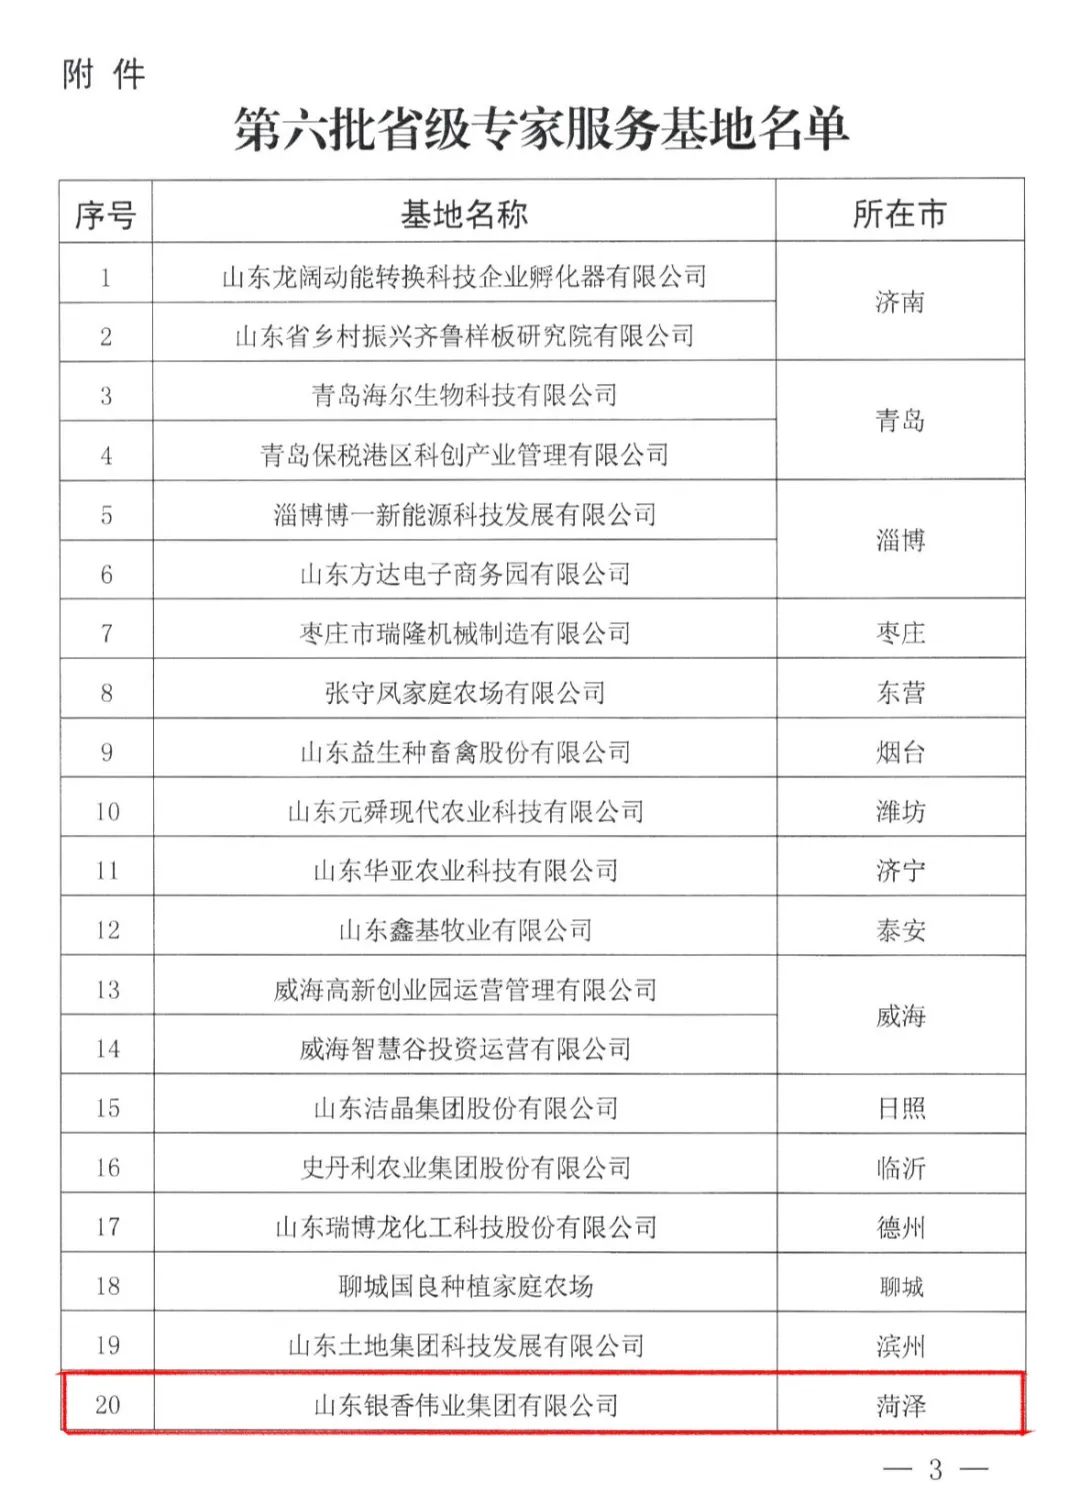 银香伟业入选第六批省级专家服务基地